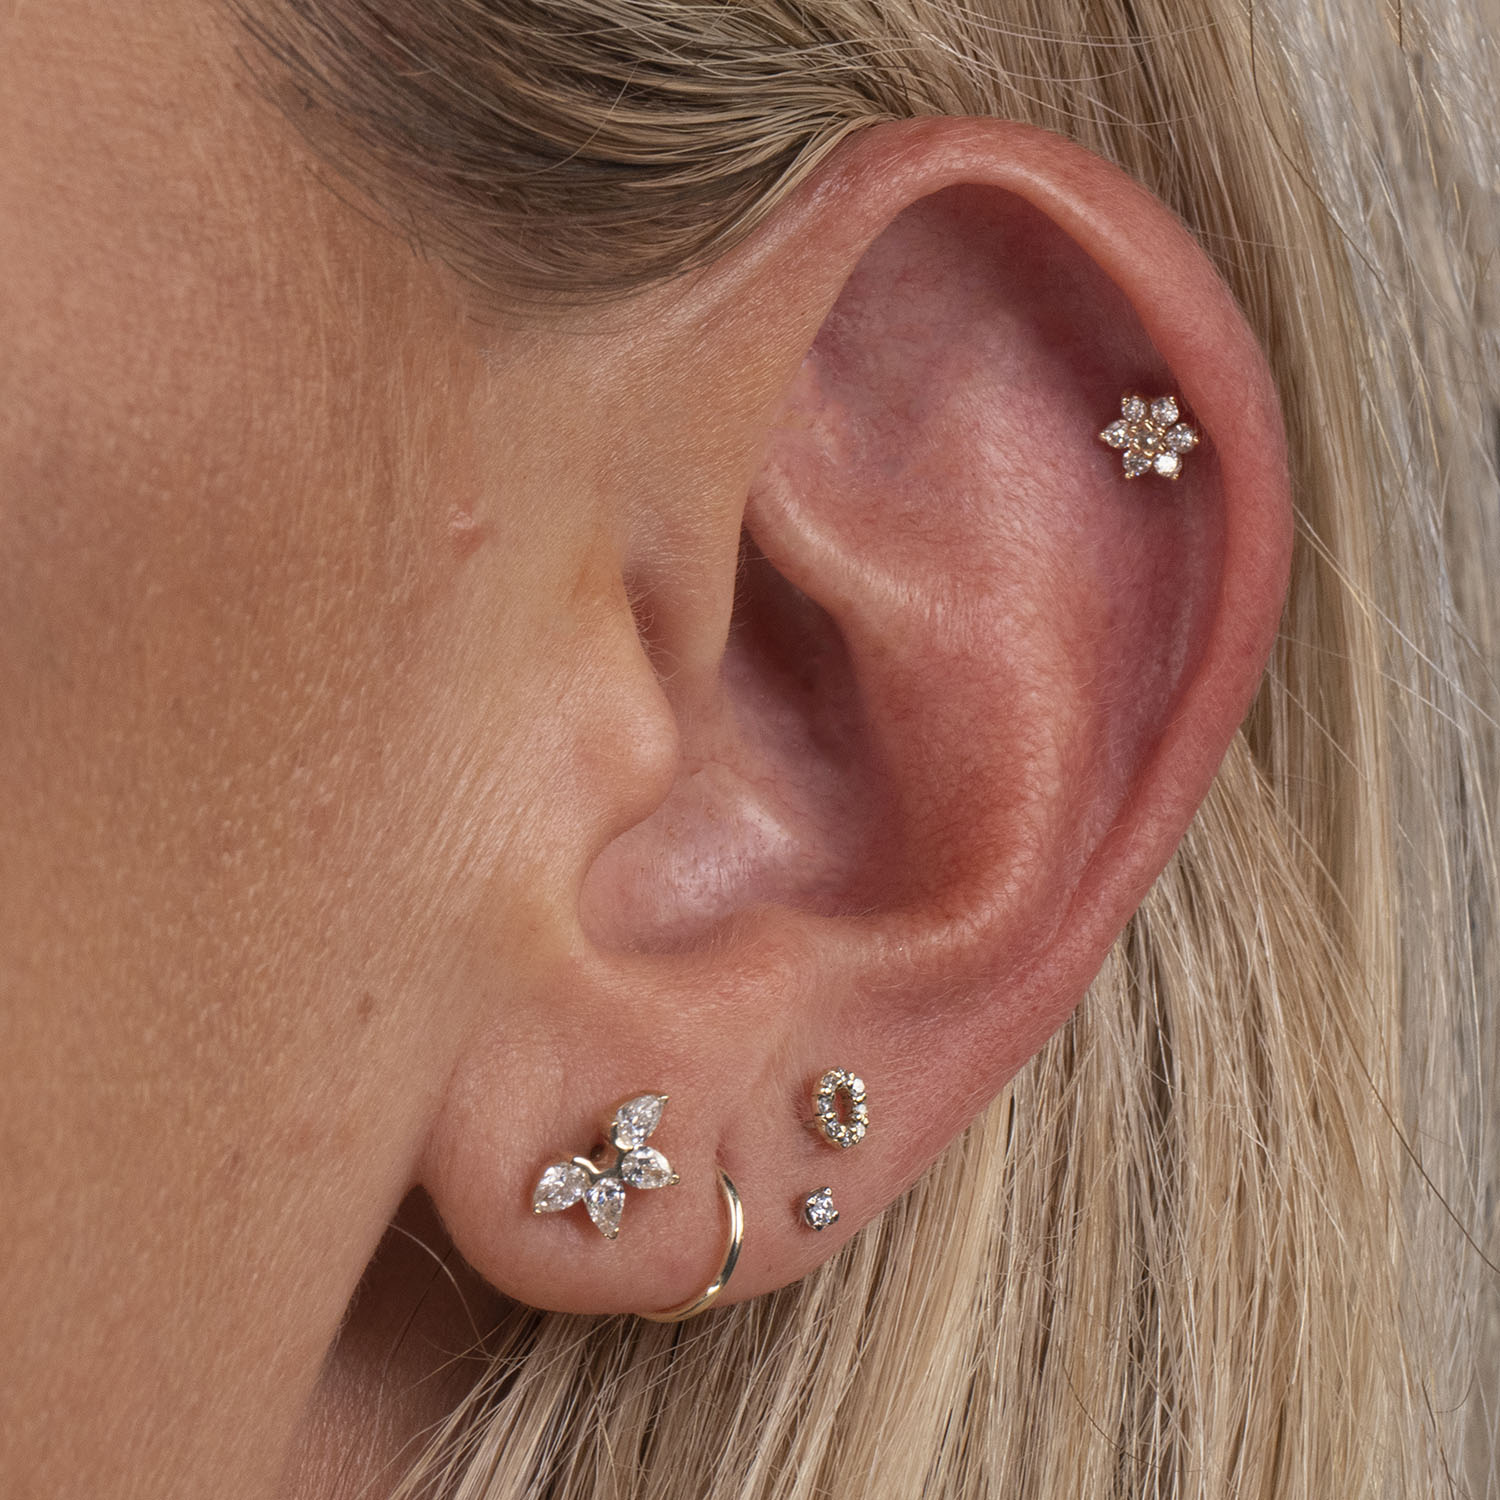 16g Flower CZ Flat Back Stud Earrings, Cartilage Earring